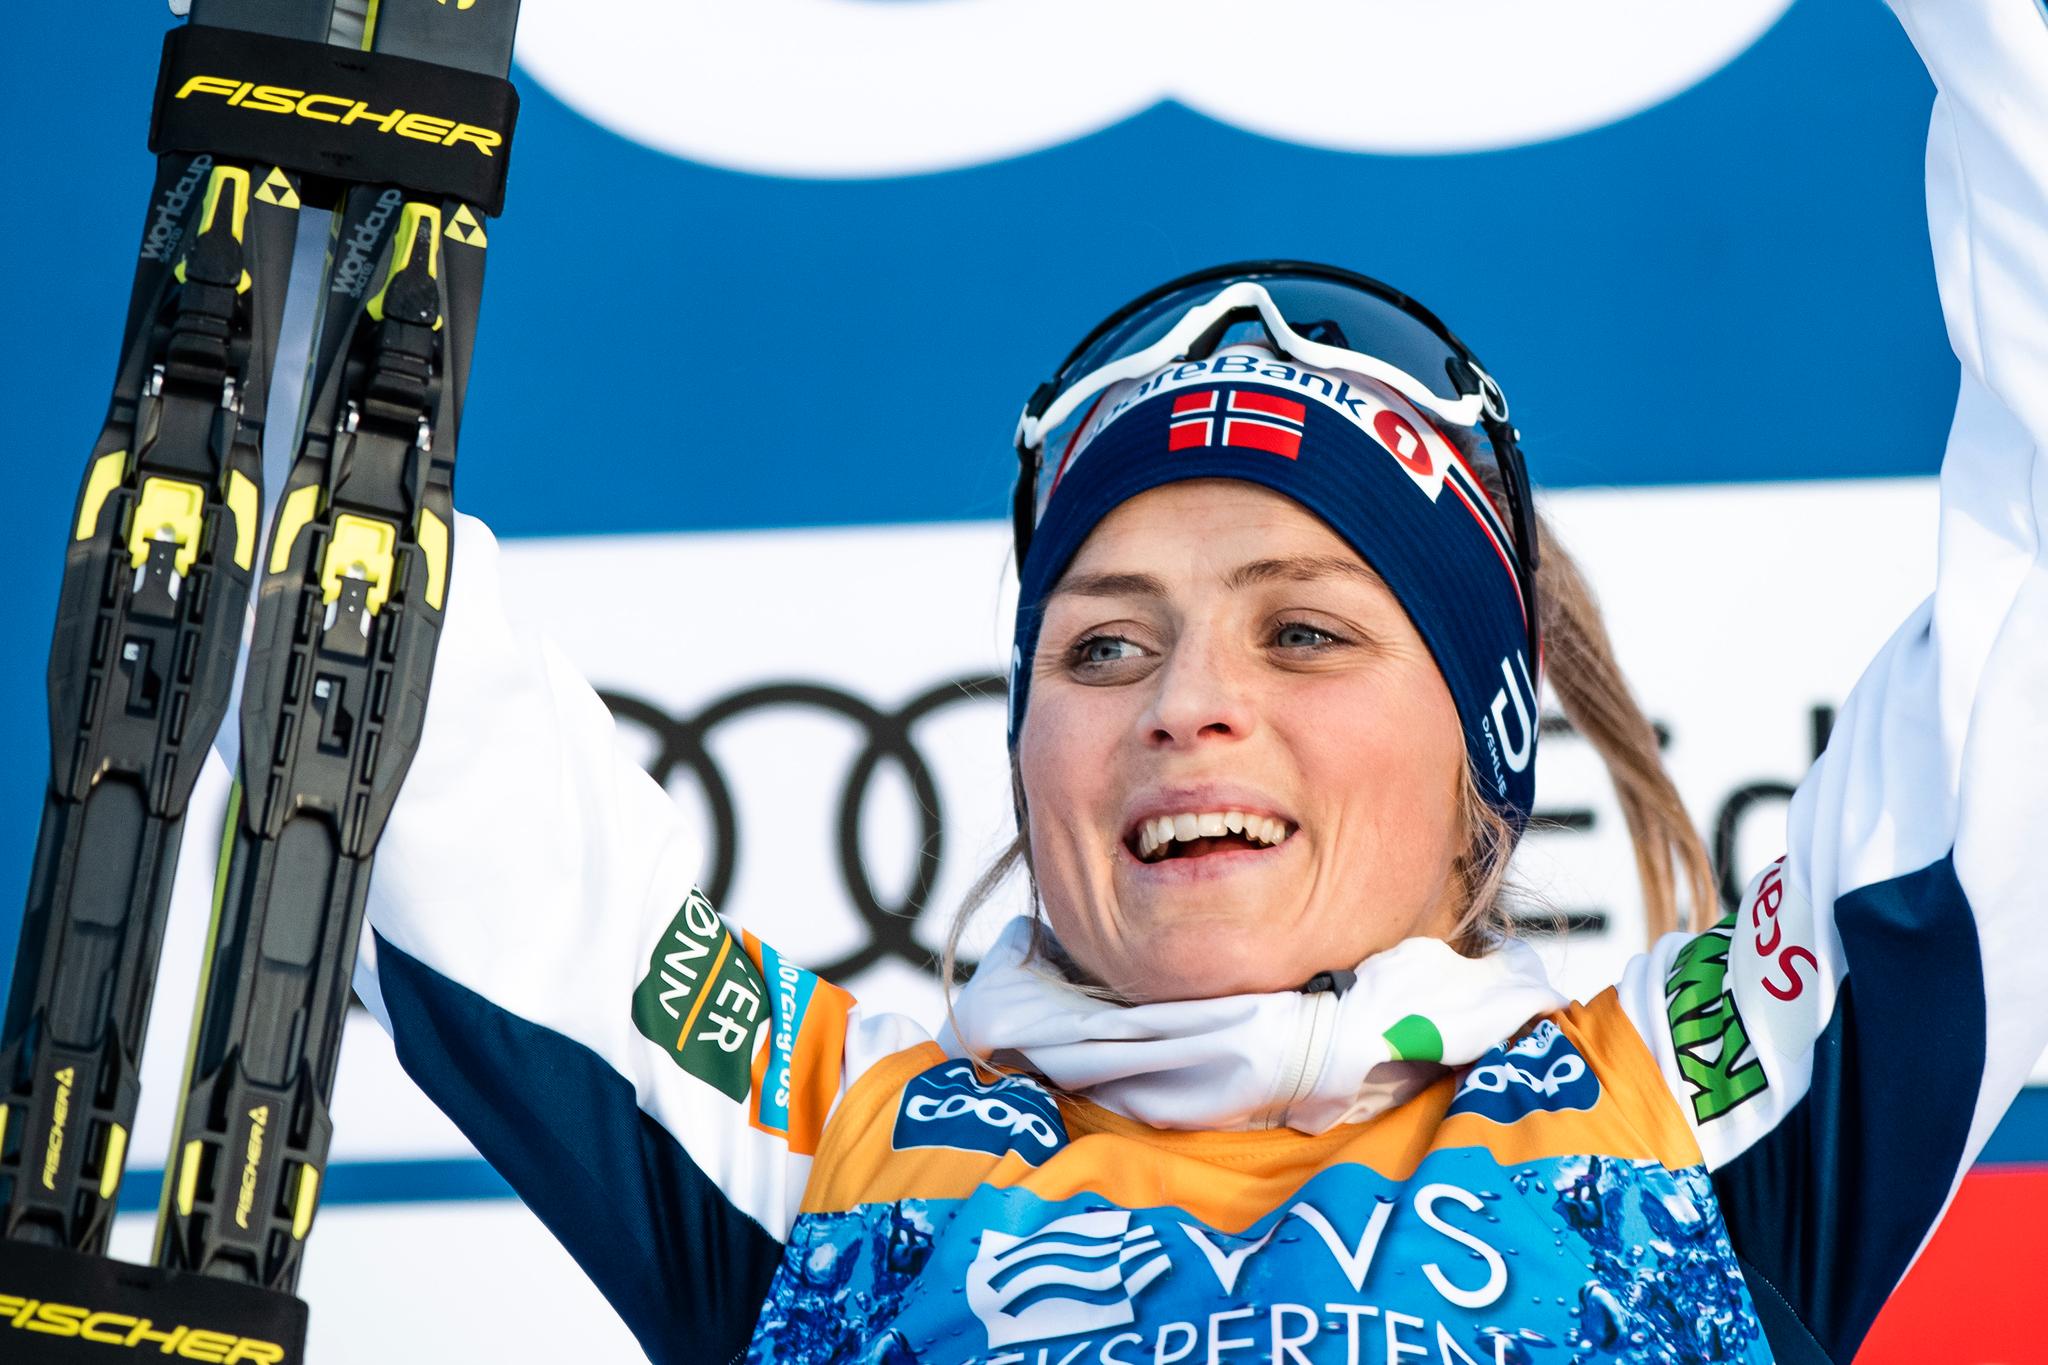 Finsk ekspert mener Therese Johaug vil få langt tøffere konkurranse denne sesongen. Her jubler Johaug for seier i verdenscupen på Lillehammer. 